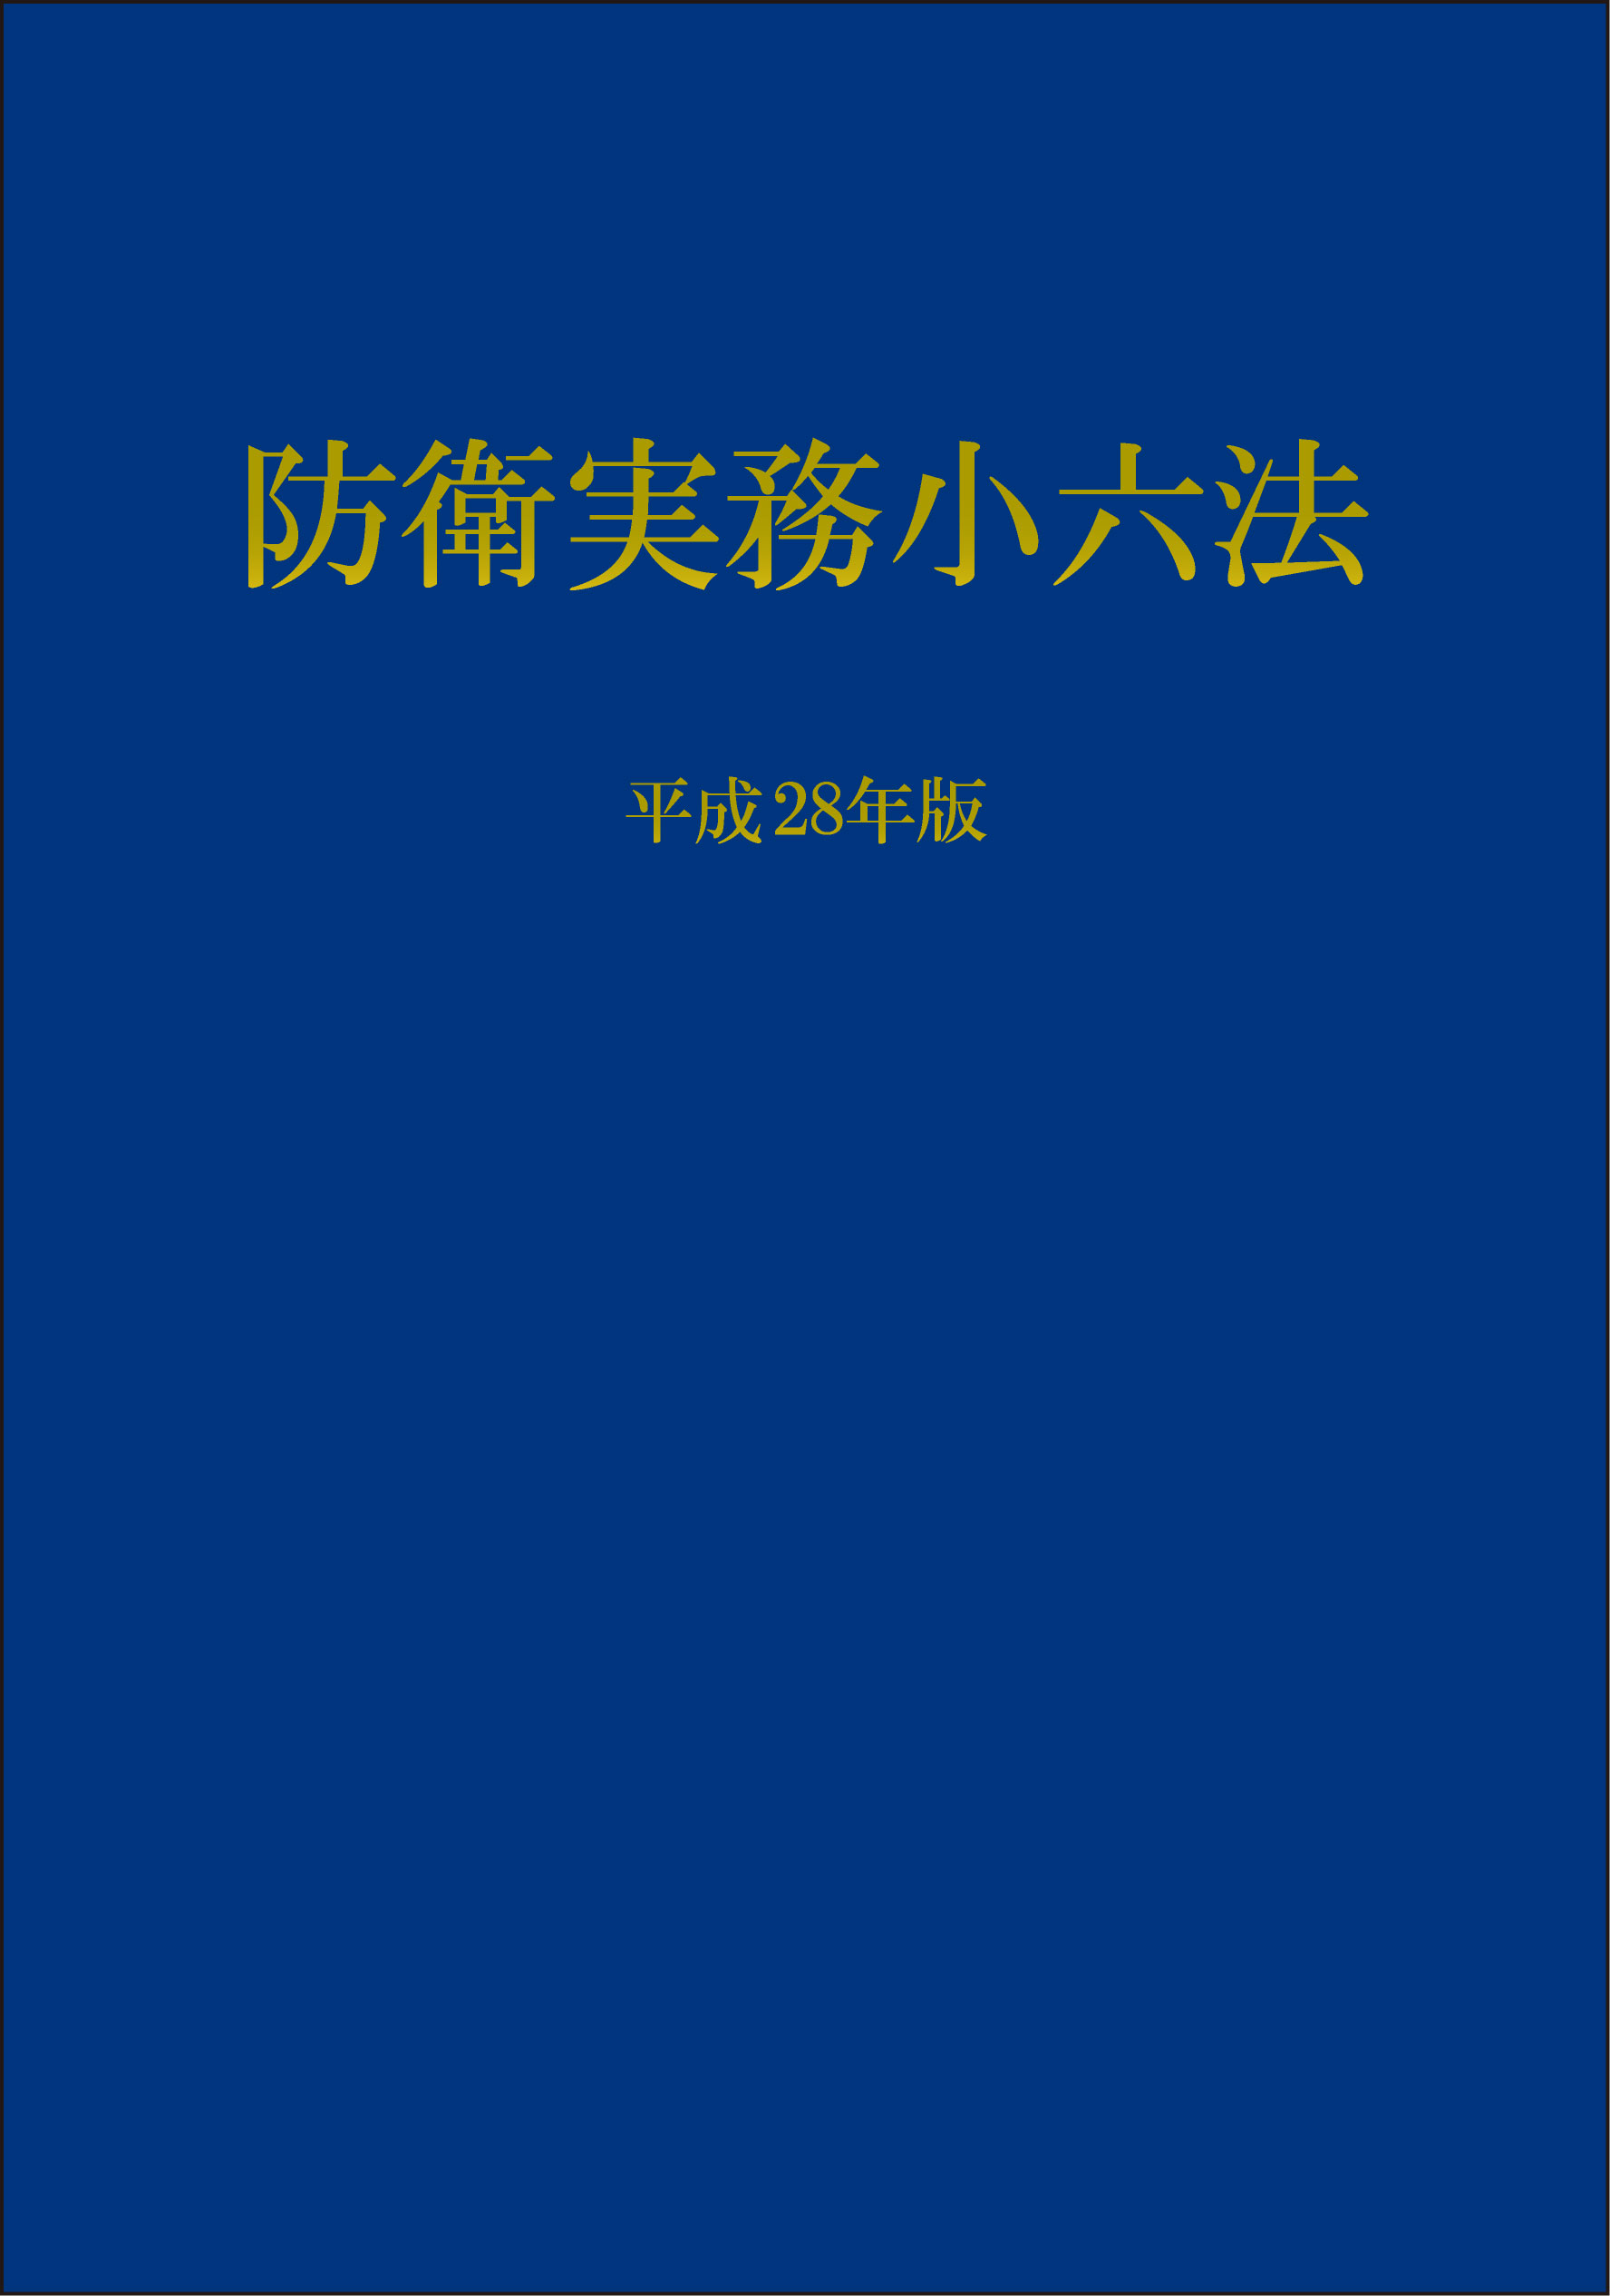 http://www.naigai-group.co.jp/books-img/ISBN978-4-905285-51-9.jpg